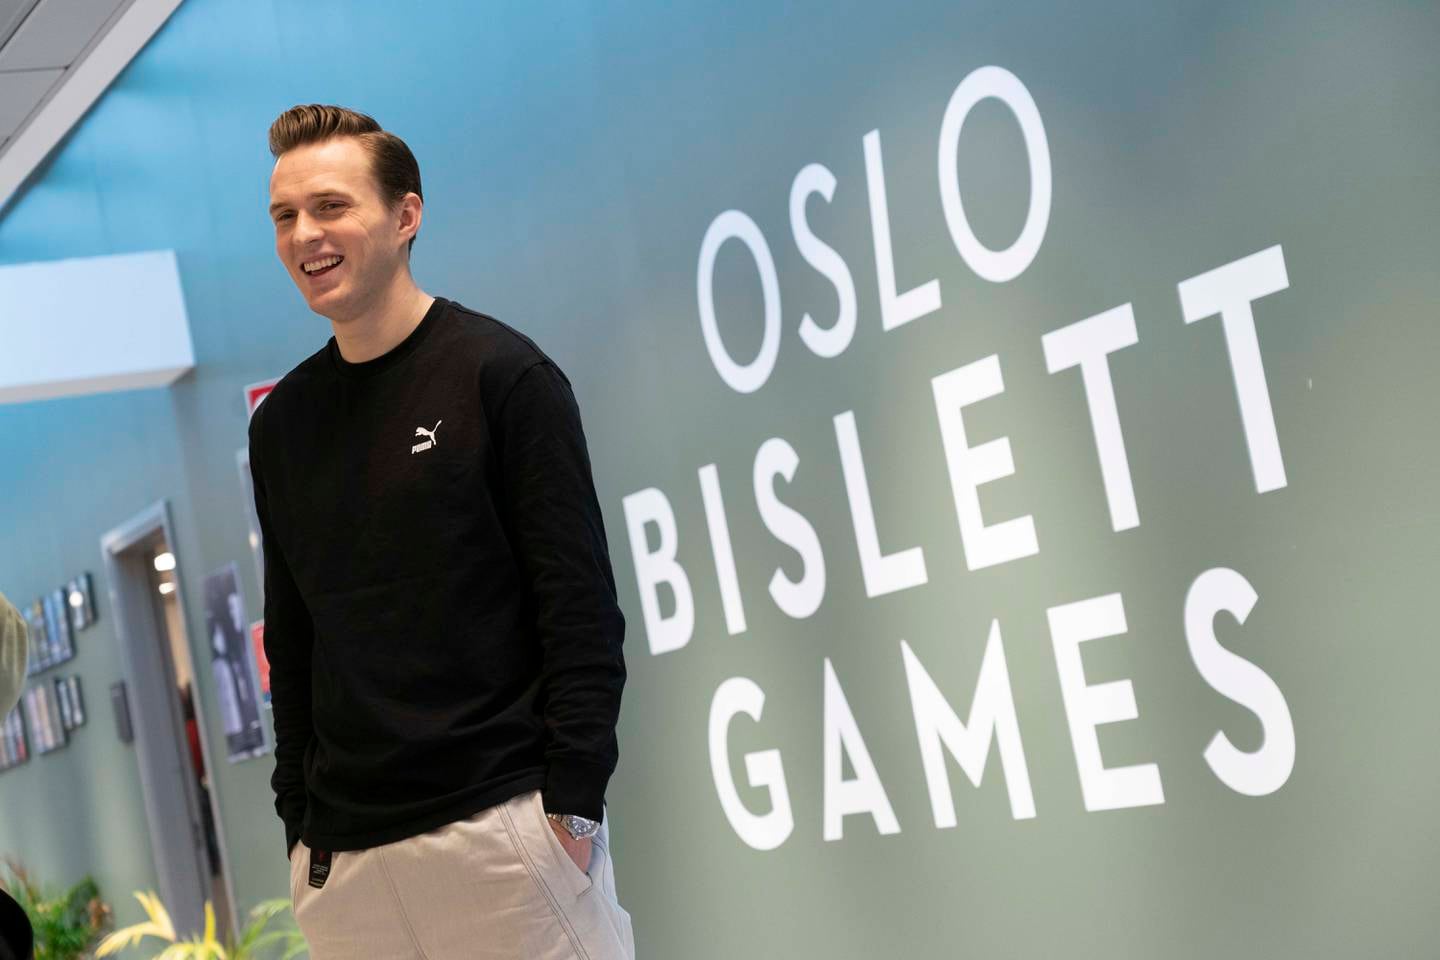 OL-mester Karsten Warholm får løpe favorittdistansen 400 meter hekk på Bislett Games neste år.
Foto: Erik Johansen / NTB